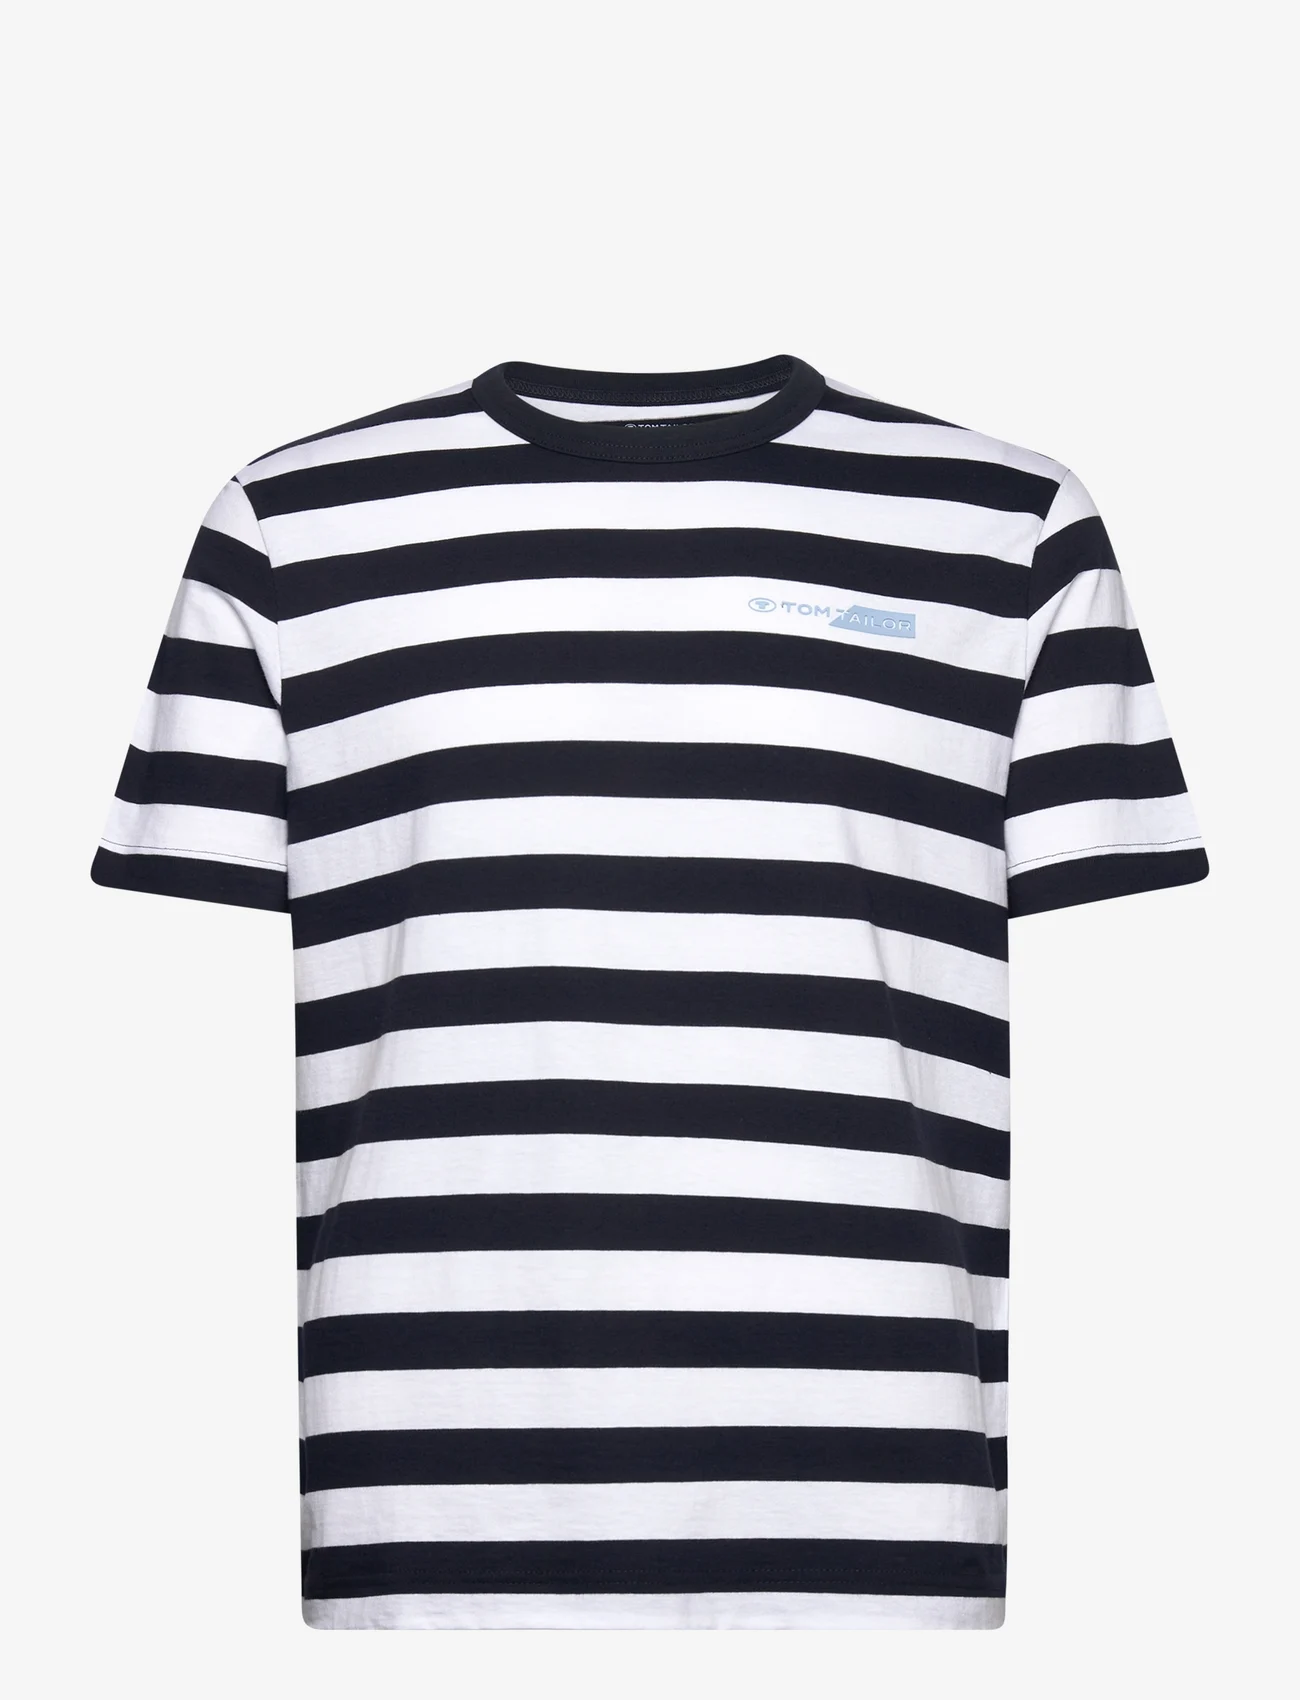 Tom Tailor - striped t-shirt - die niedrigsten preise - navy bold stripe - 0